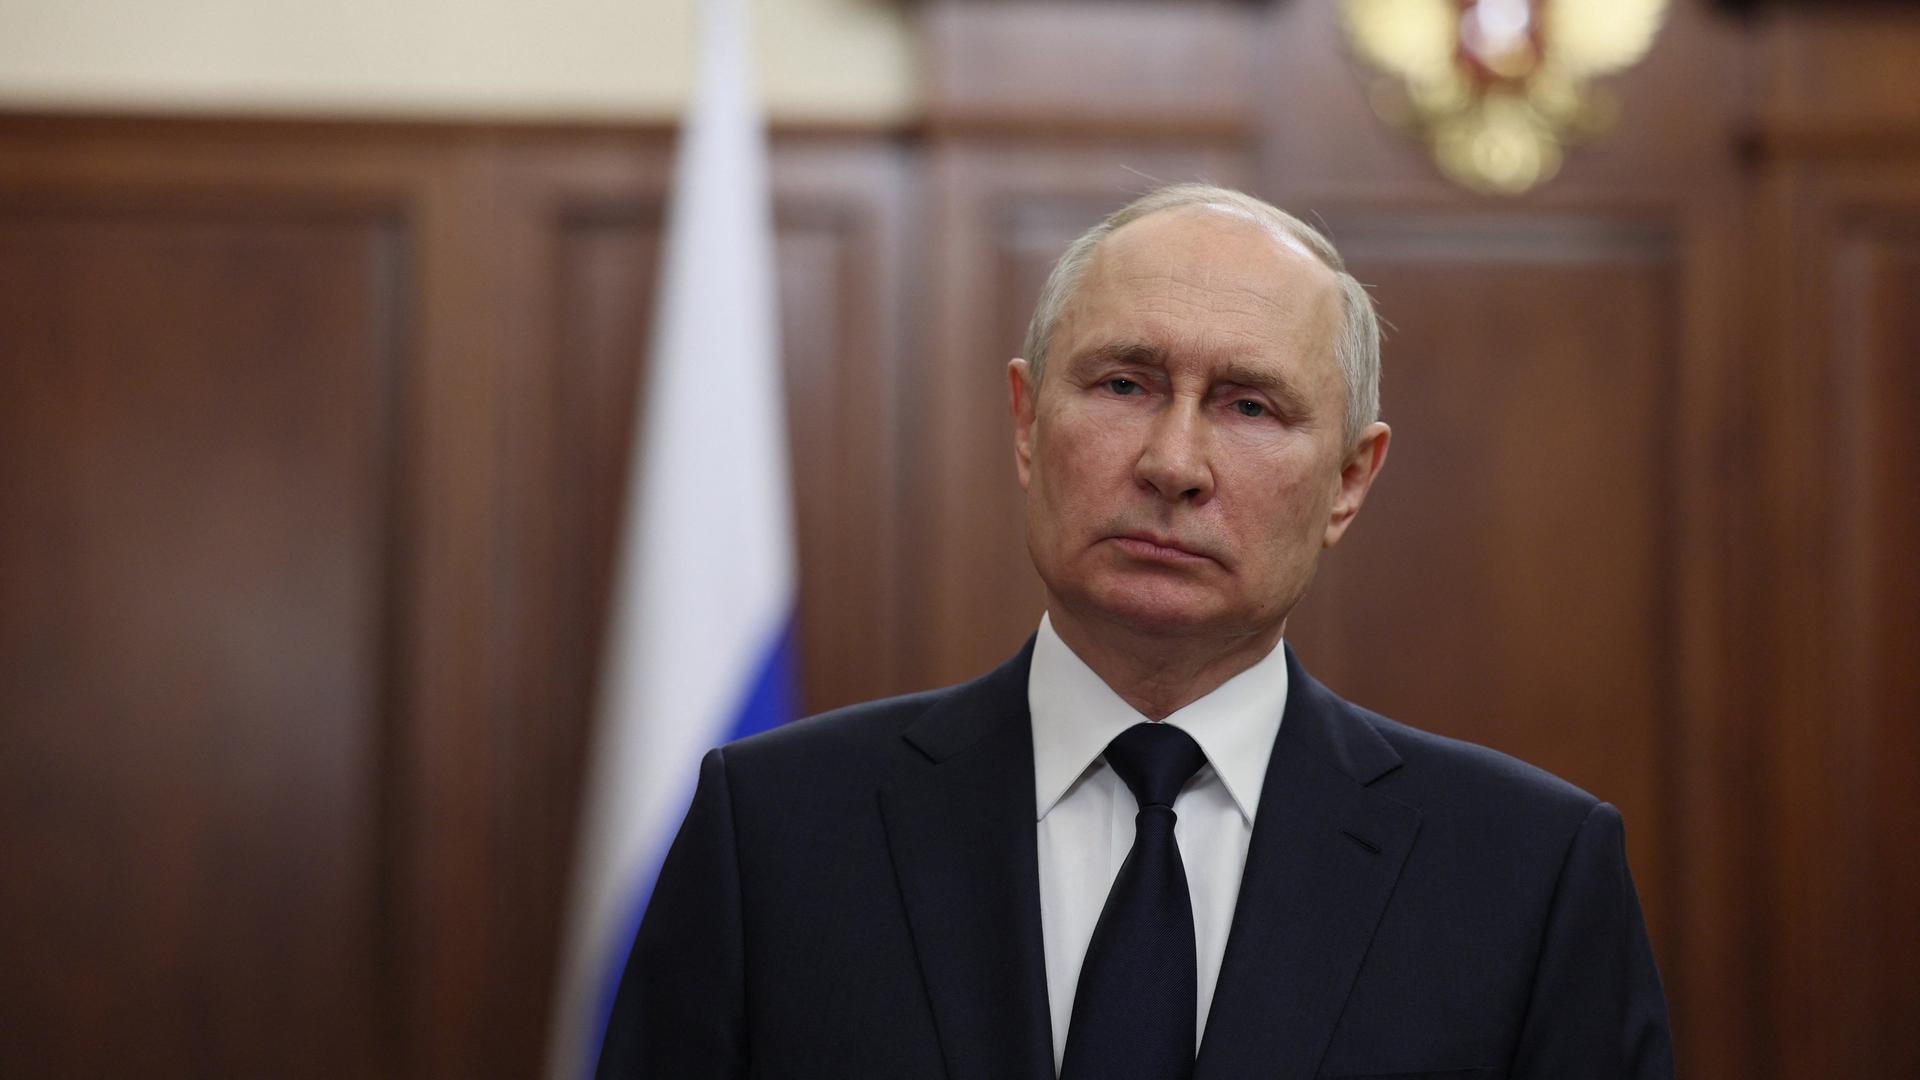 Russlands Präsident Putin steht vor einer holzvertäfelten Wand im Kreml. Er trägt einen dunklen Anzug, eine Krawatte und ein weißes Hemd und schaut ernst.